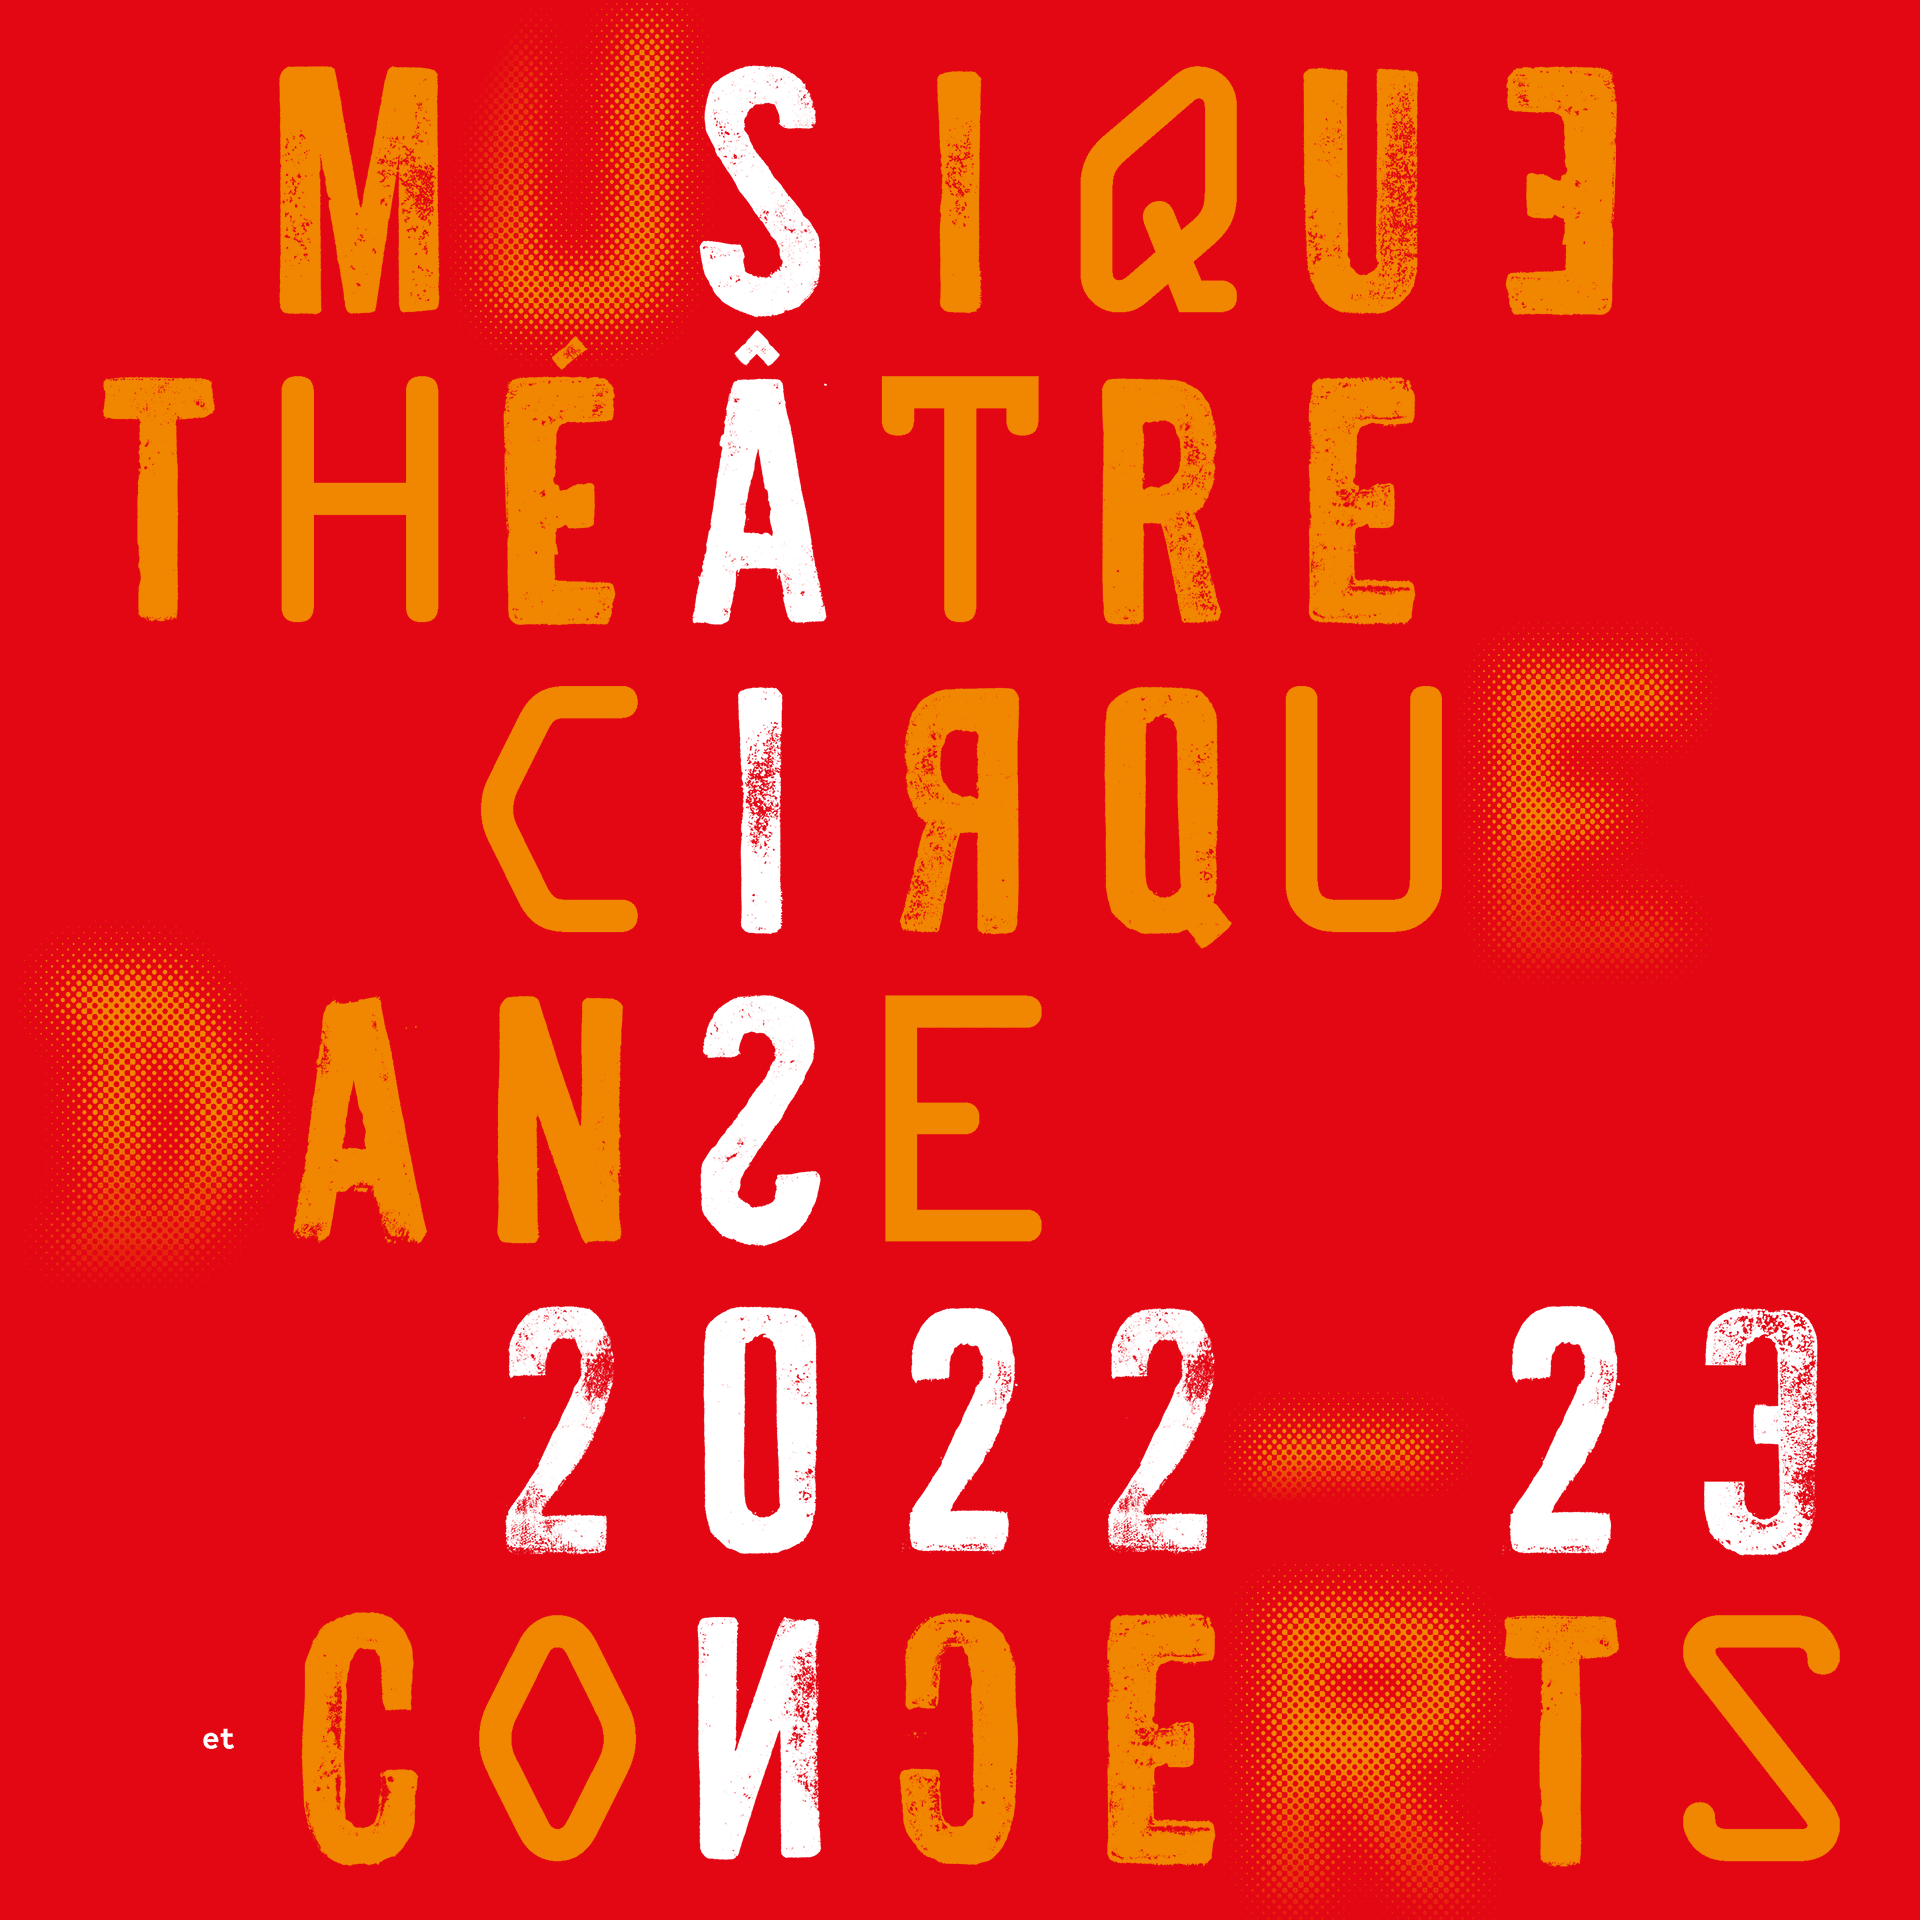 Musique cinema danse saison 2022